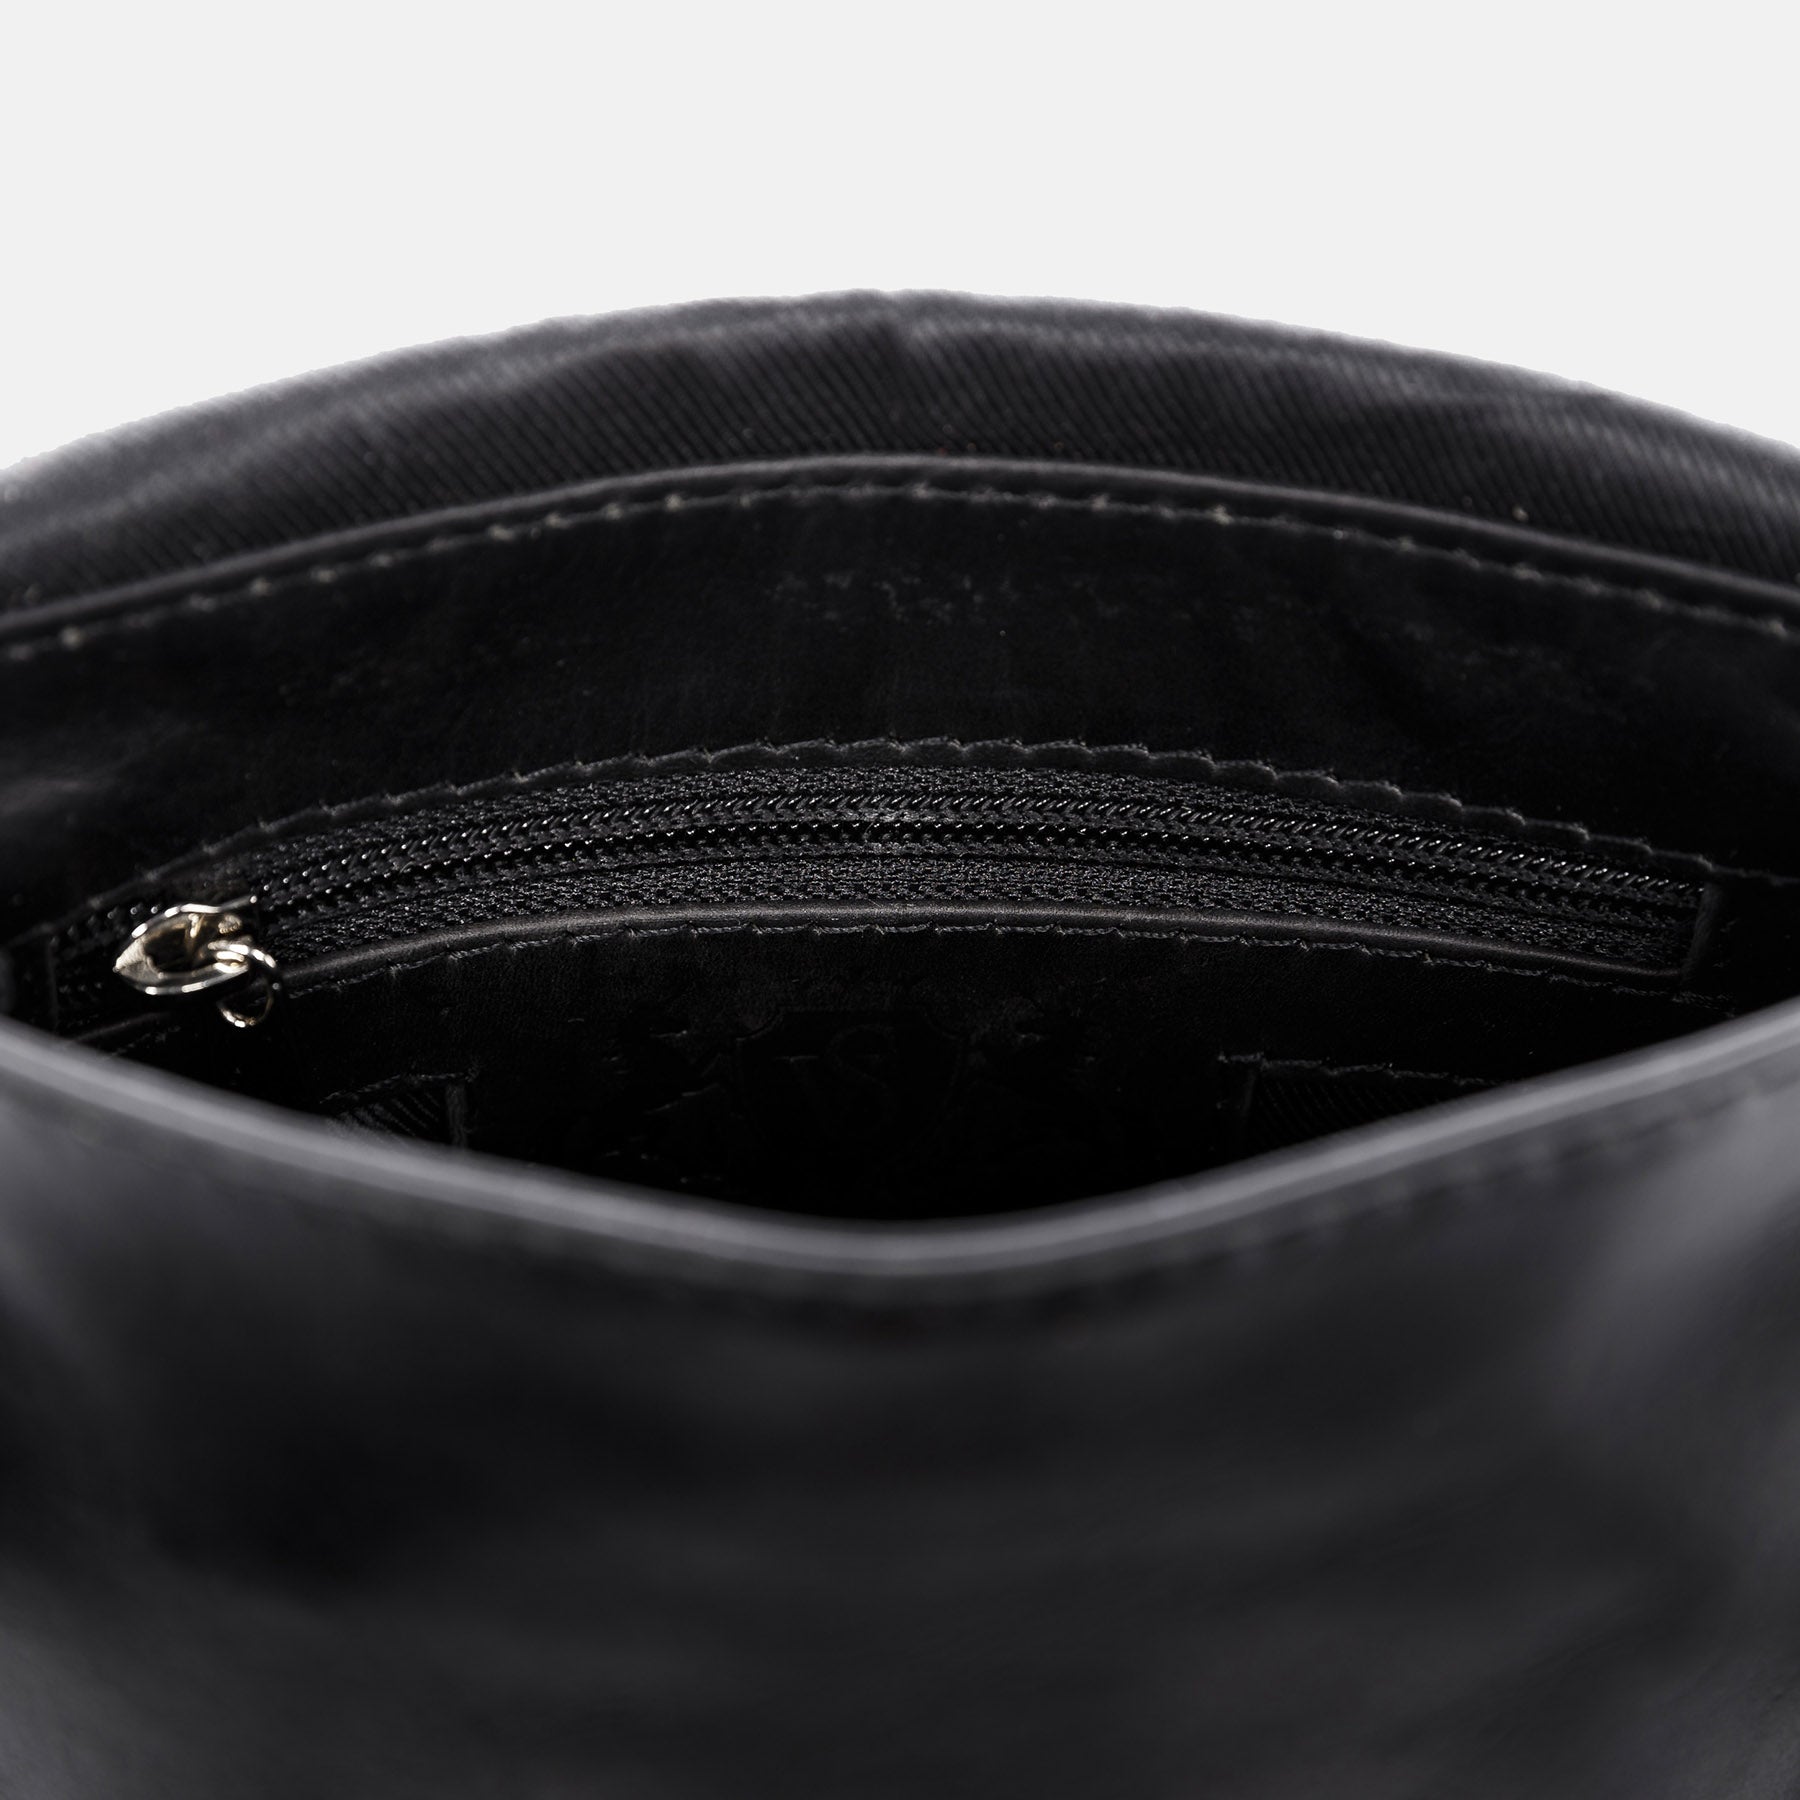 Shoulder bag BRIGHTON smooth leather black